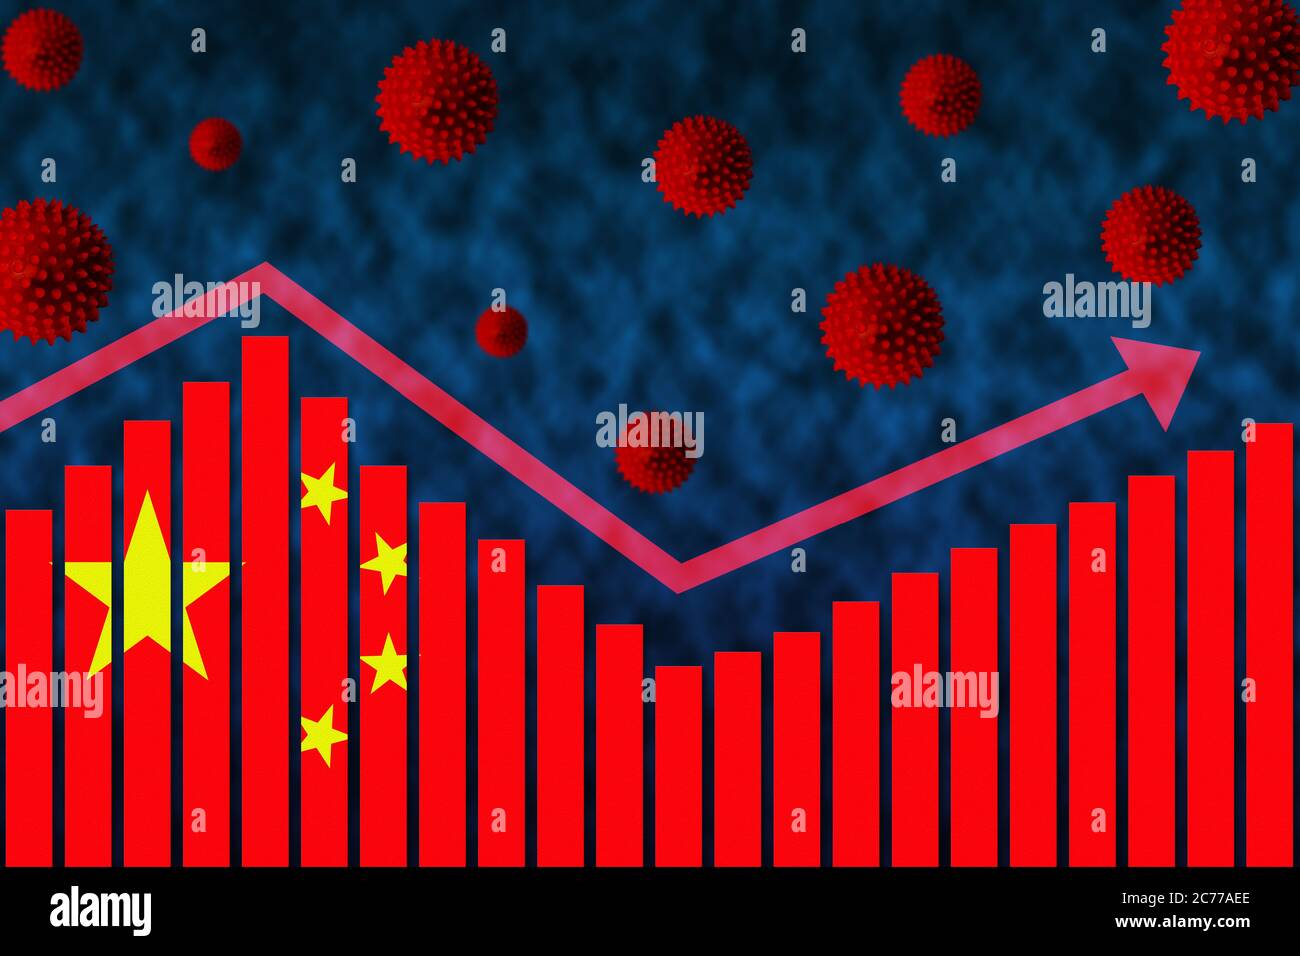 Bandera de China en el gráfico de barras concepto de la infección por coronavirus COVID-19 de la segunda onda casos después de la primera onda ilustrado por el gráfico y los símbolos del virus de la popa Foto de stock